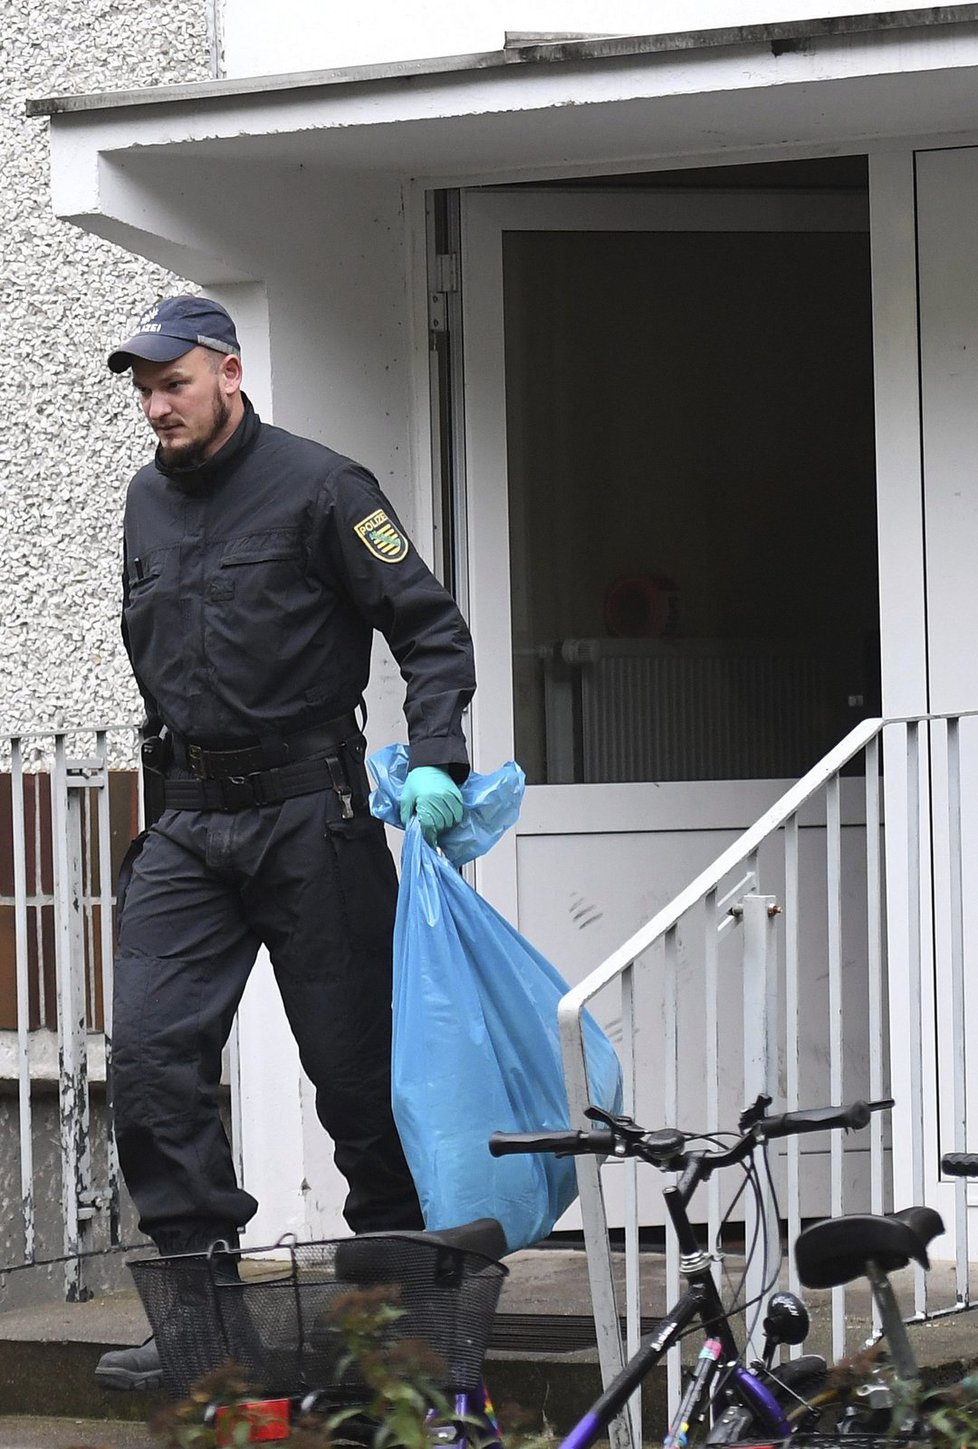 Němečtí policisté zasahovali v bytě Syřana podezřelého z přípravy teroristických útoků.